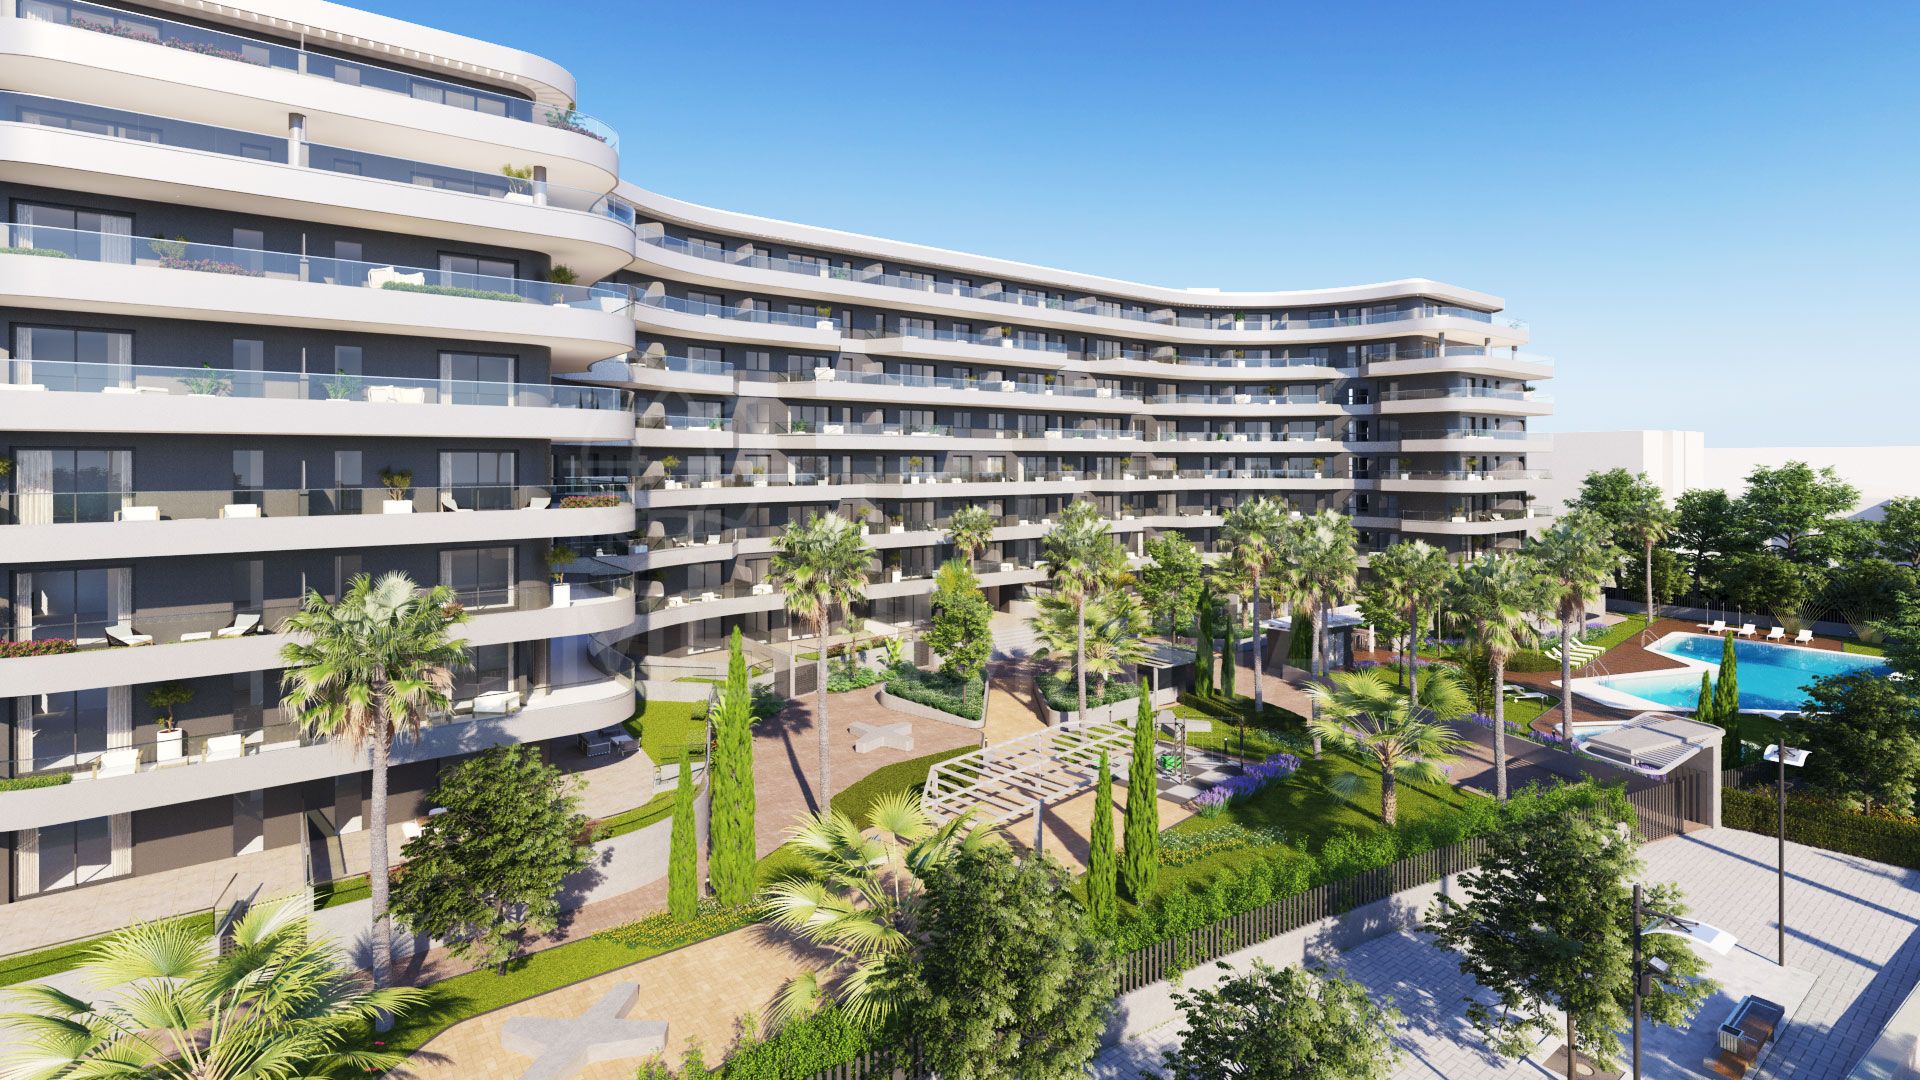 Halia, Malaga - Un moderno complejo residencial formado por apartamentos de 1 a 4 dormitorios en el centro de Málaga